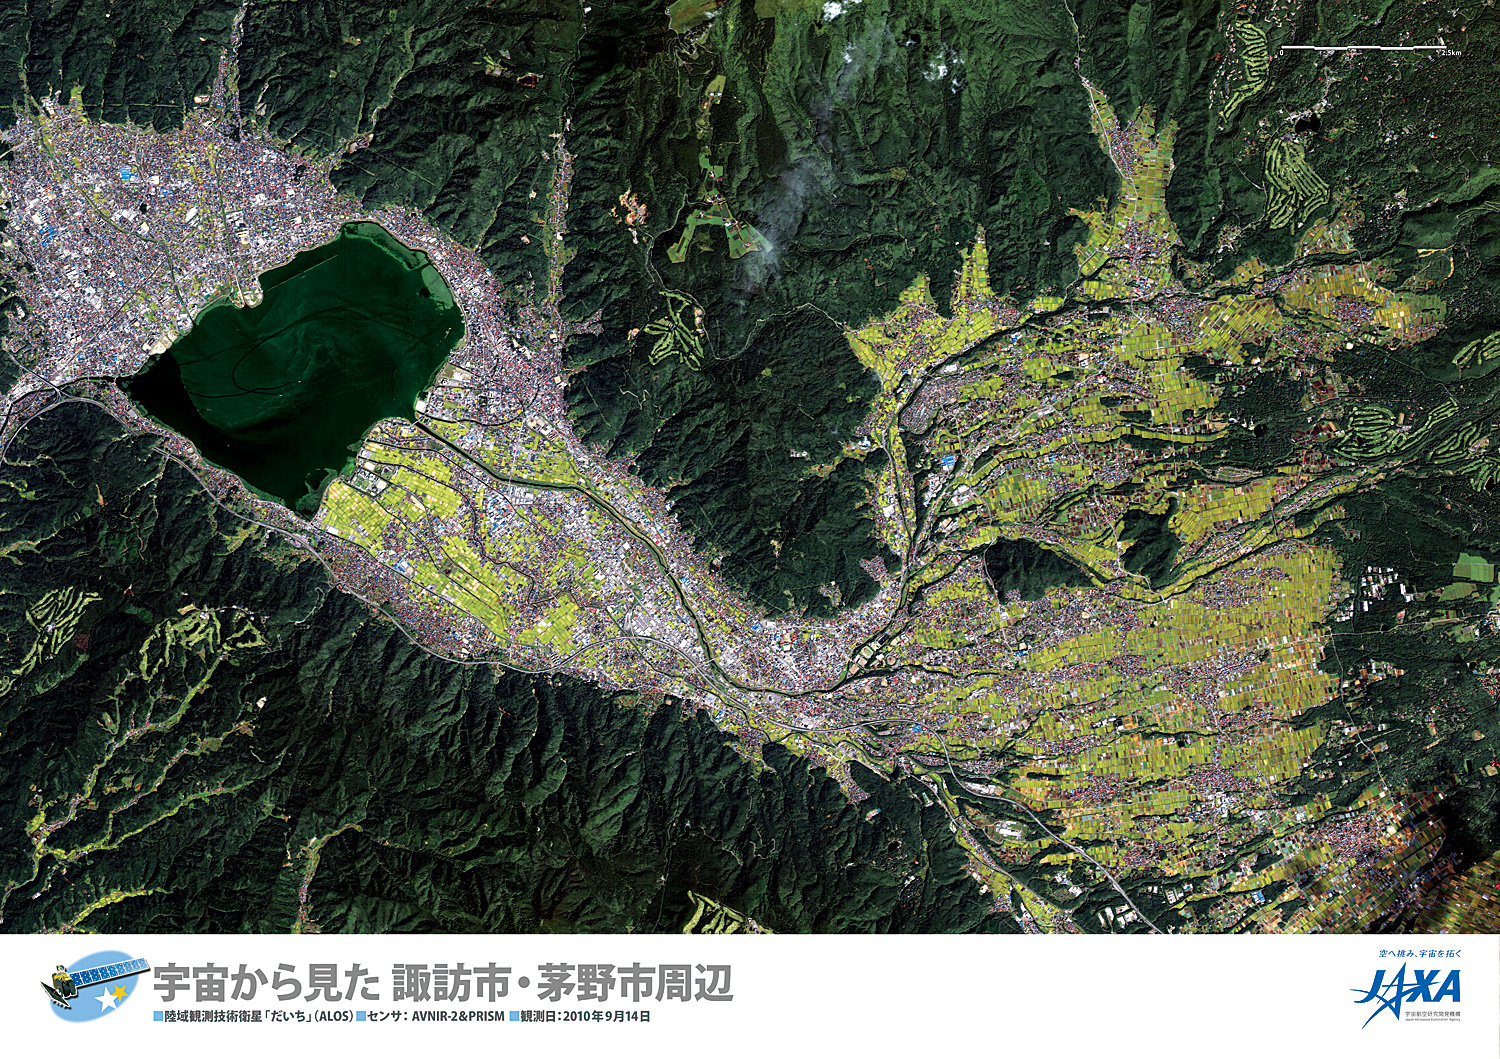 だいちから見た日本の都市 諏訪市、茅野市周辺:衛星画像（ポスター仕上げ）